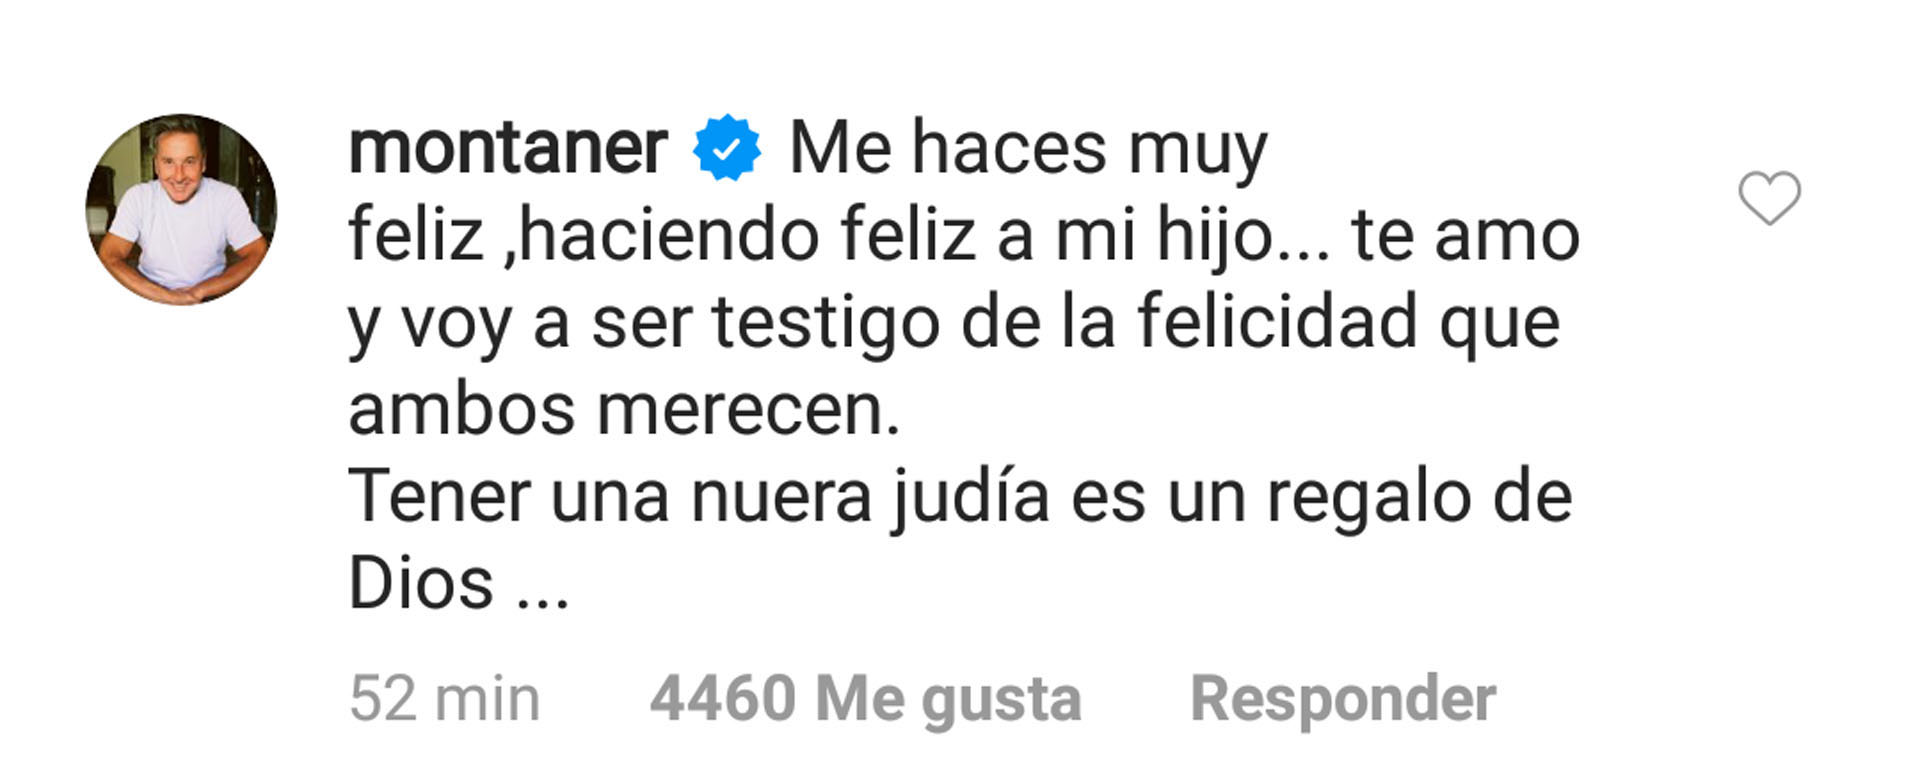 El mensaje de Ricardo Montaner para Stefi (Foto: Instagram)